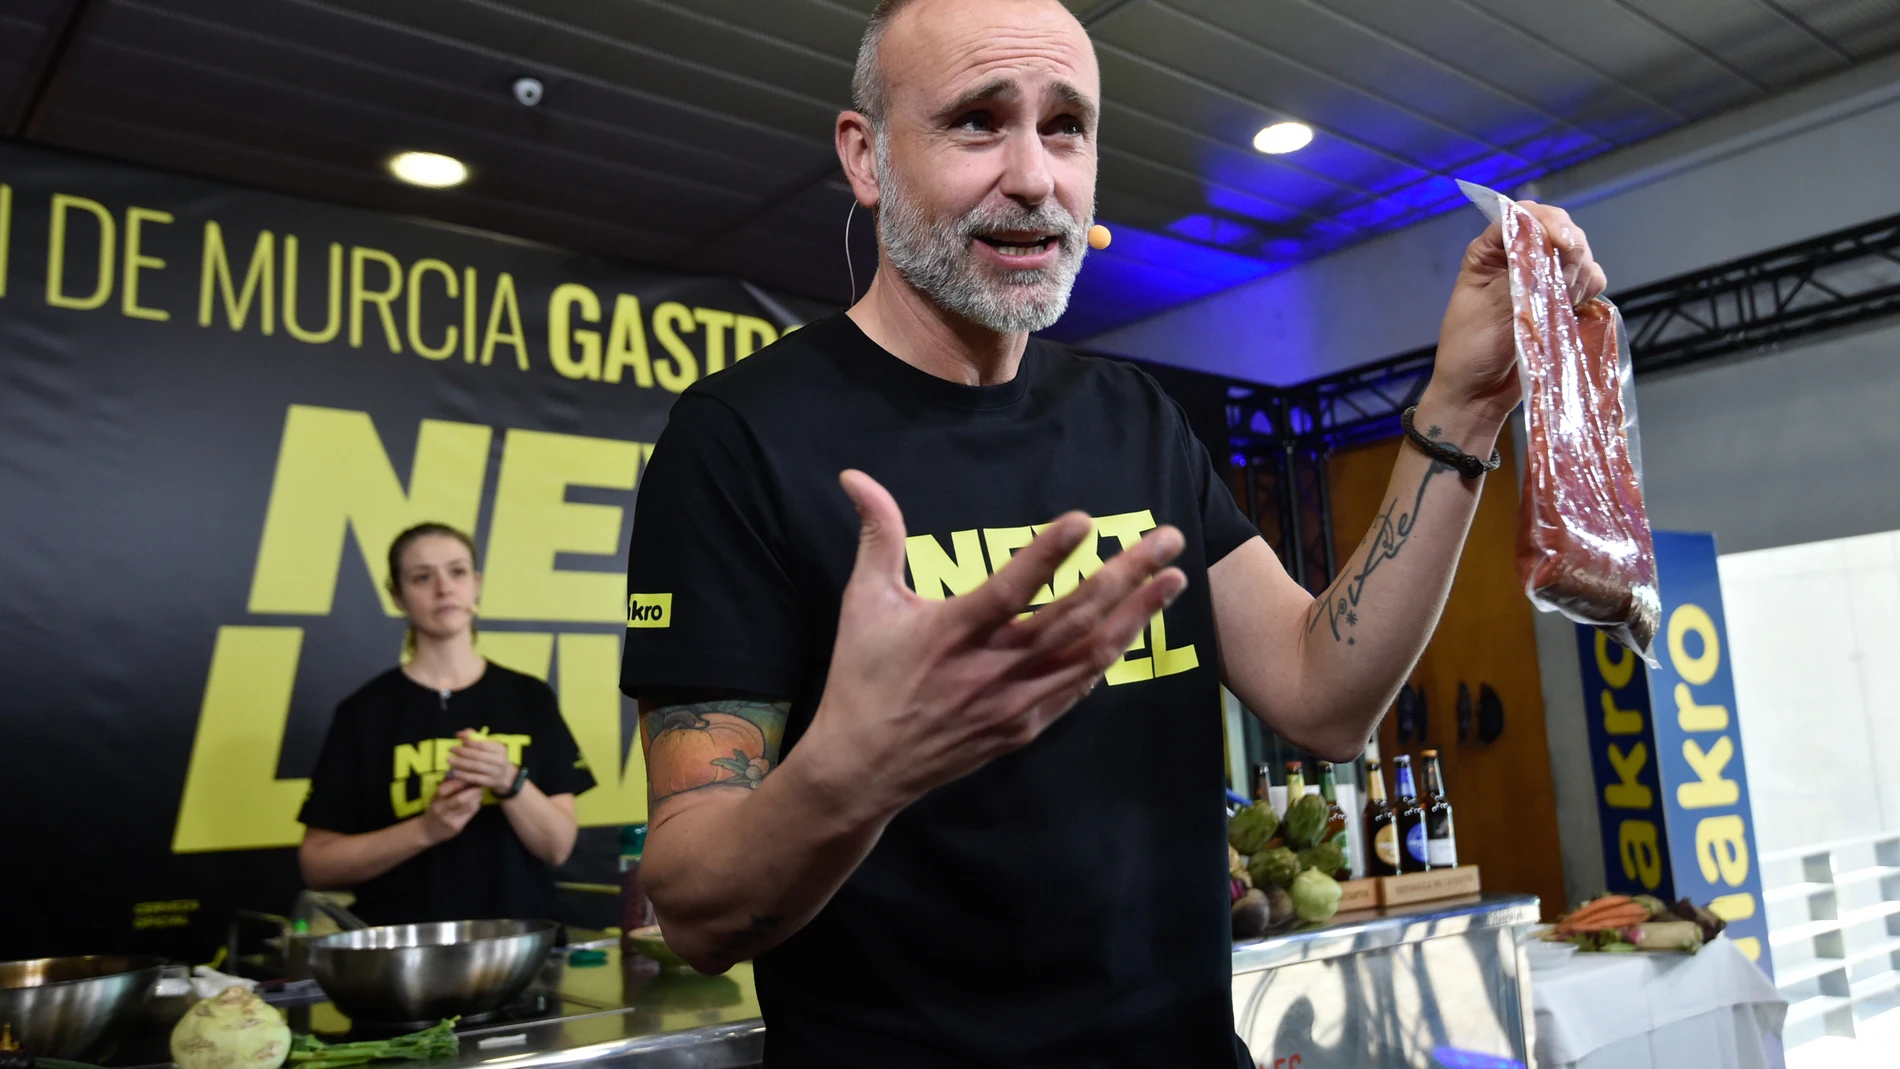 El encargado de encender los fogones del congreso Murcia Gastronómica ha sido el chef Rodrigo de la Calle (El Invernadero, 1 estrella Michelin)